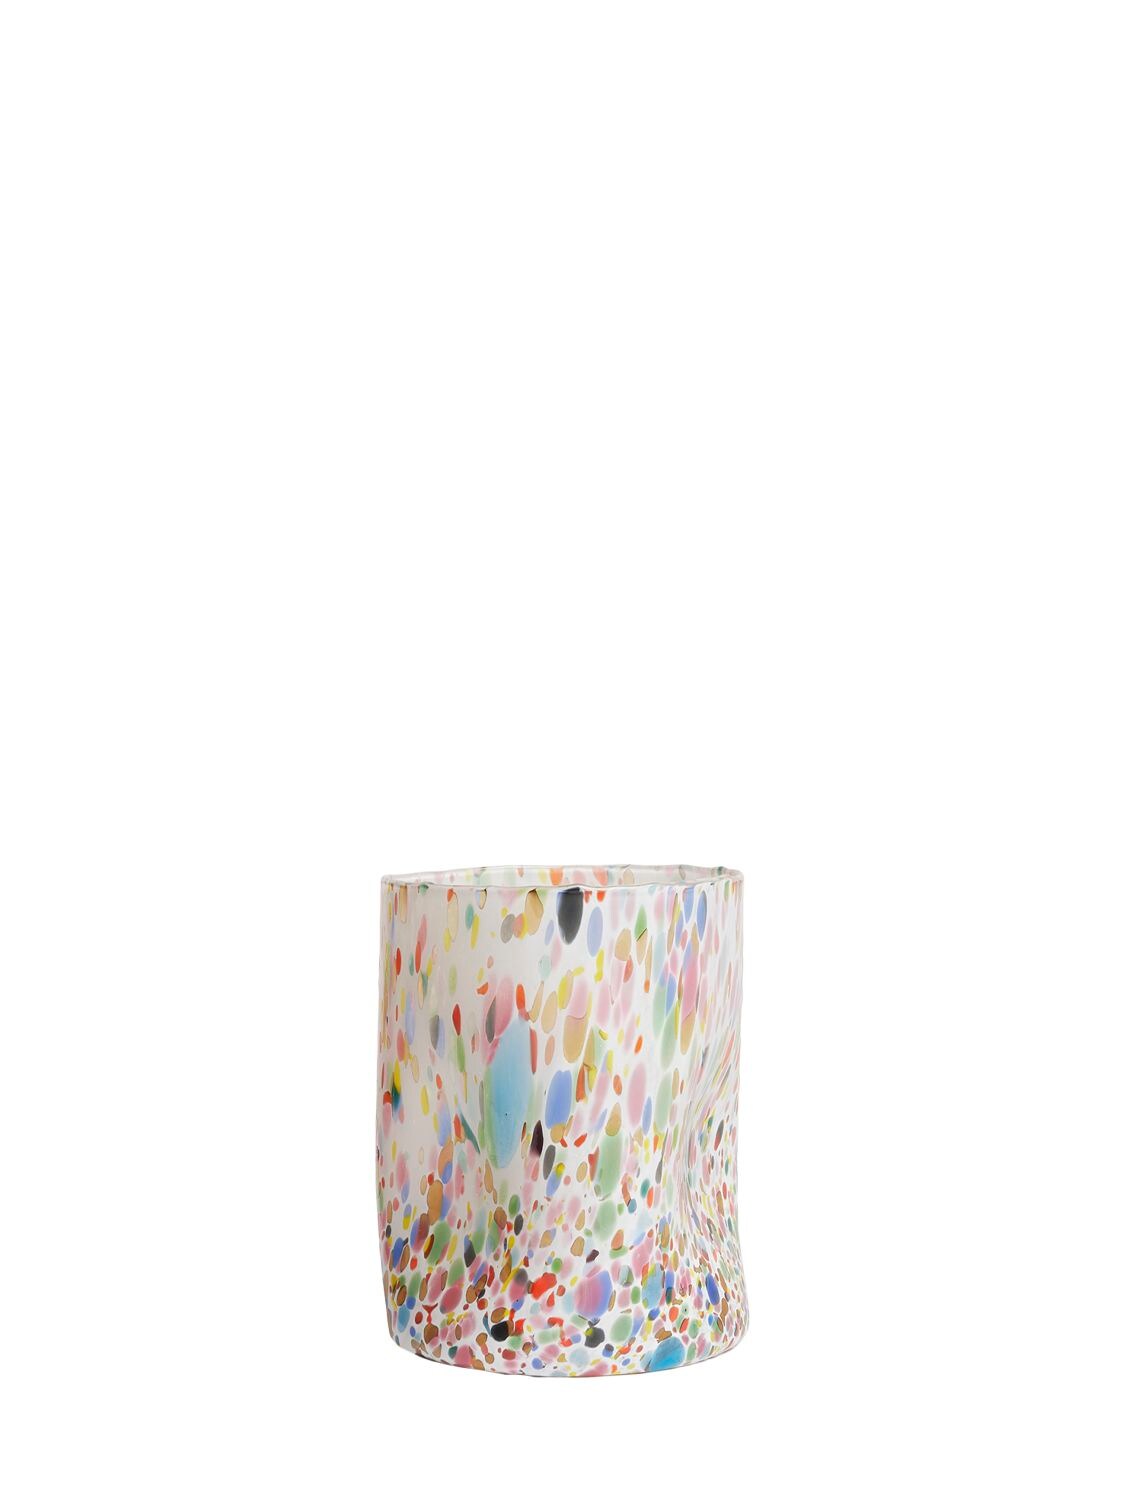 Bitossi Home Macchia玻璃杯2个套装 In Multicolor